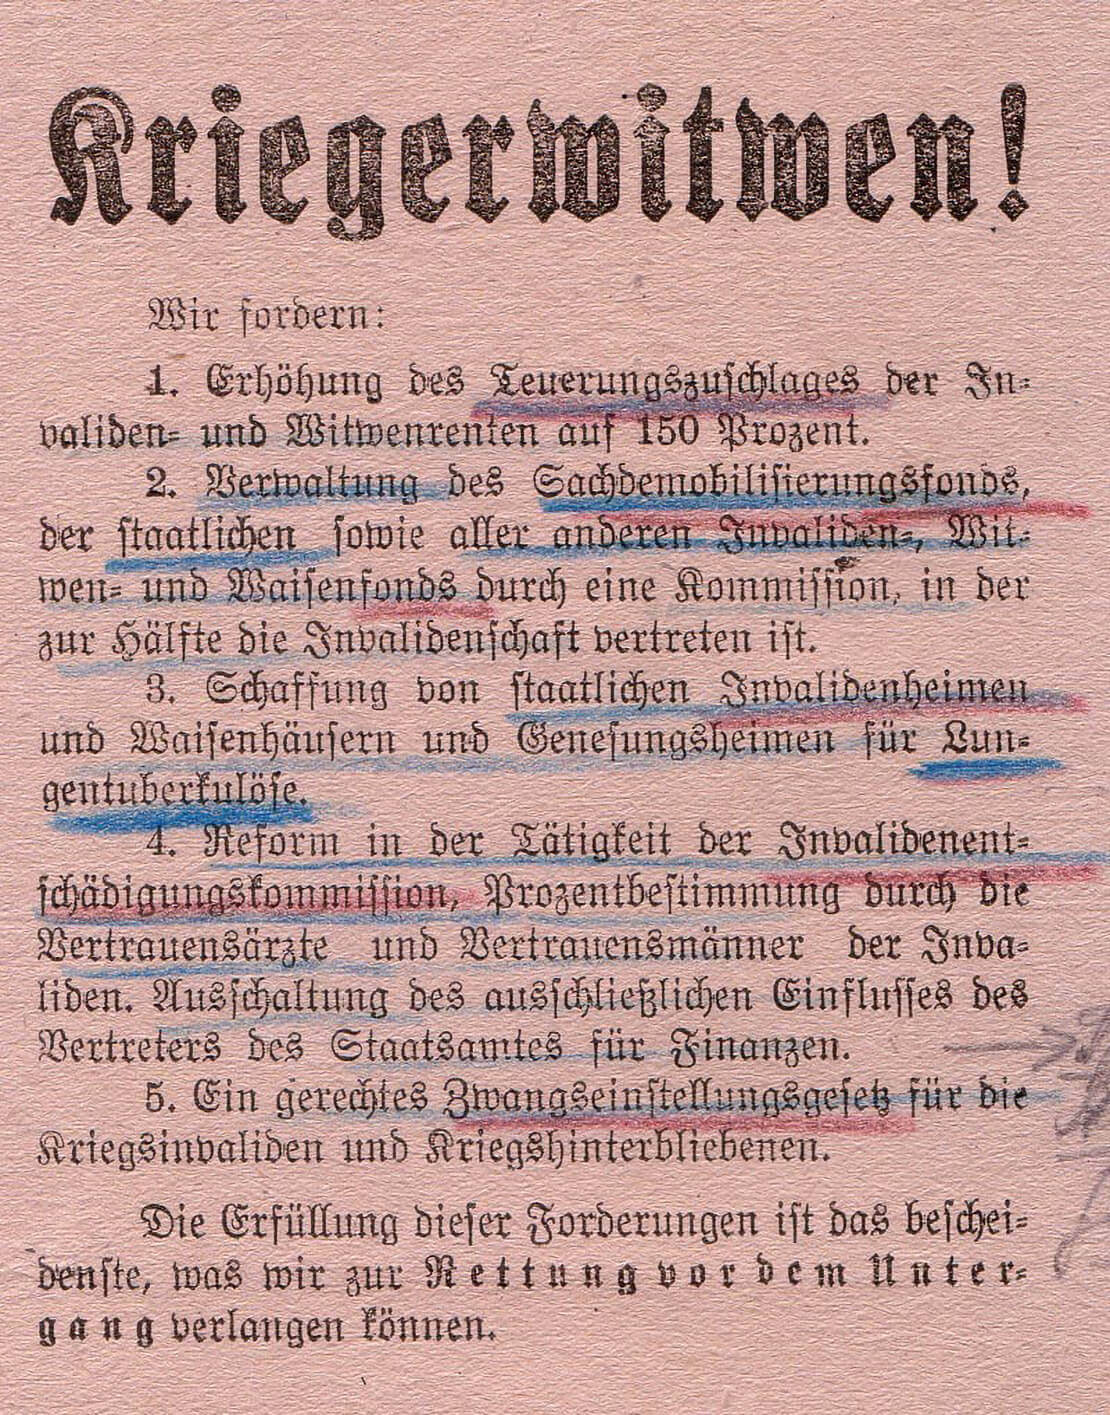 Flugblatt mit Forderungen der Kriegerwitwen, 1920, ÖStA/AdR, BMfSV, Kt 1372, Zl. 12074/1920 